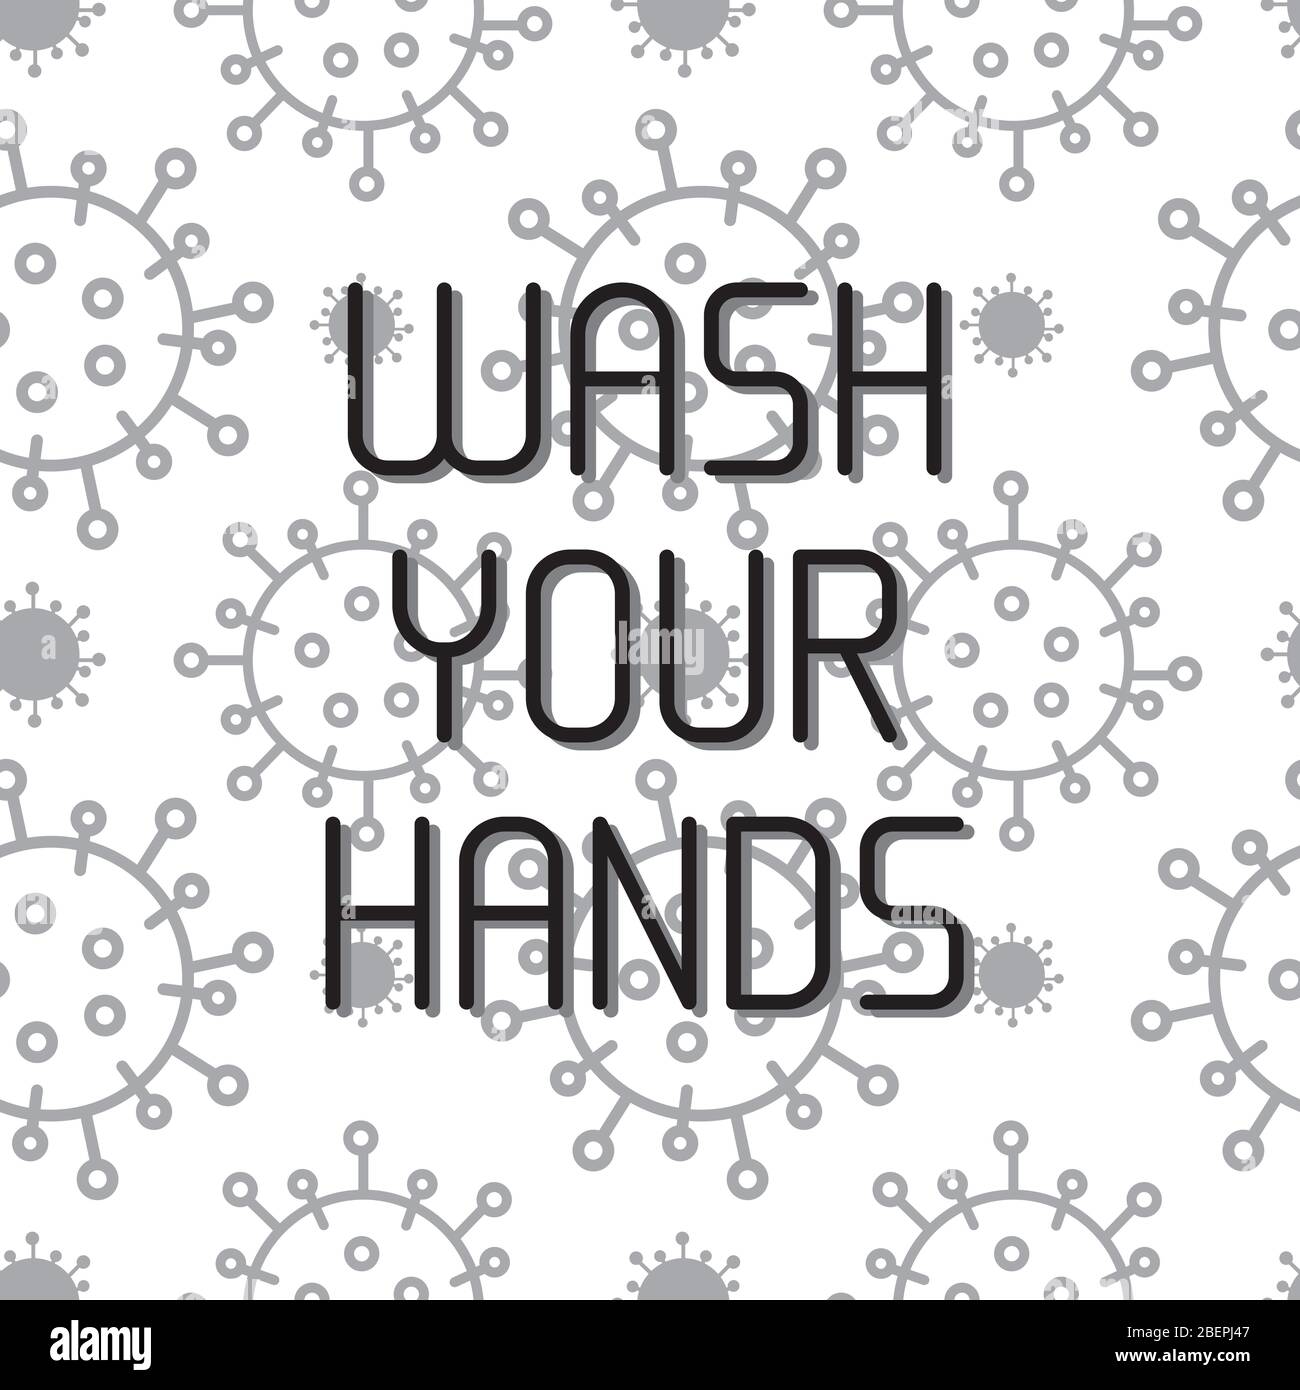 Waschen Sie Ihre Hand Konzept. Handgezeichnete Vektorbeschriftungen. Virus Corona auf dem Hintergrund. Coronavirus Kampagne Wash your Hand Concept. Vektorgrafik Stock Vektor